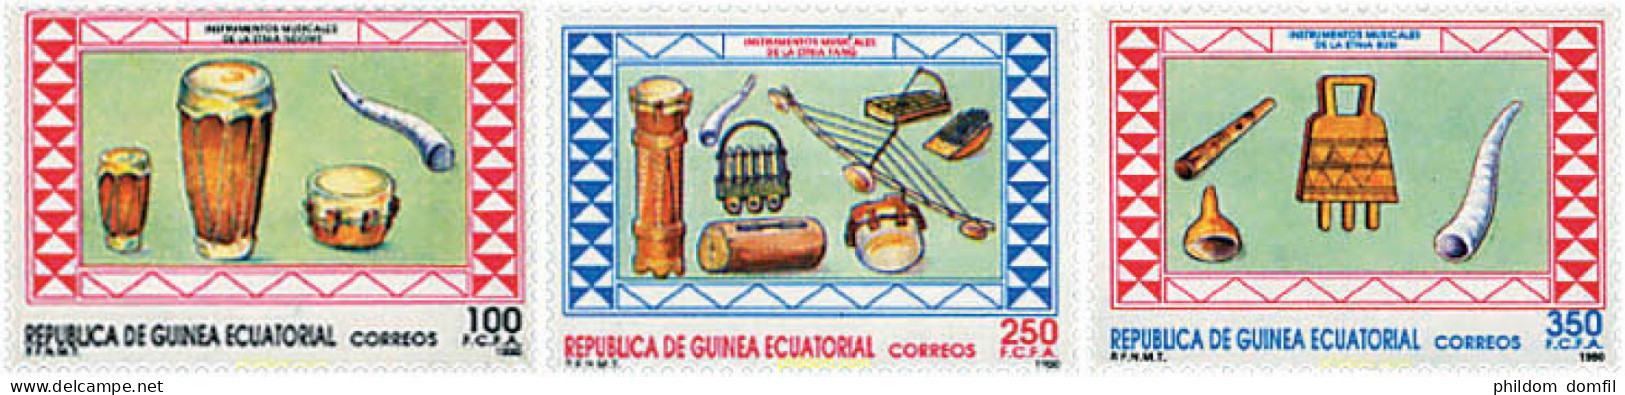 37619 MNH GUINEA ECUATORIAL 1990 INSTRUMENTOS DE MUSICA - Equatoriaal Guinea